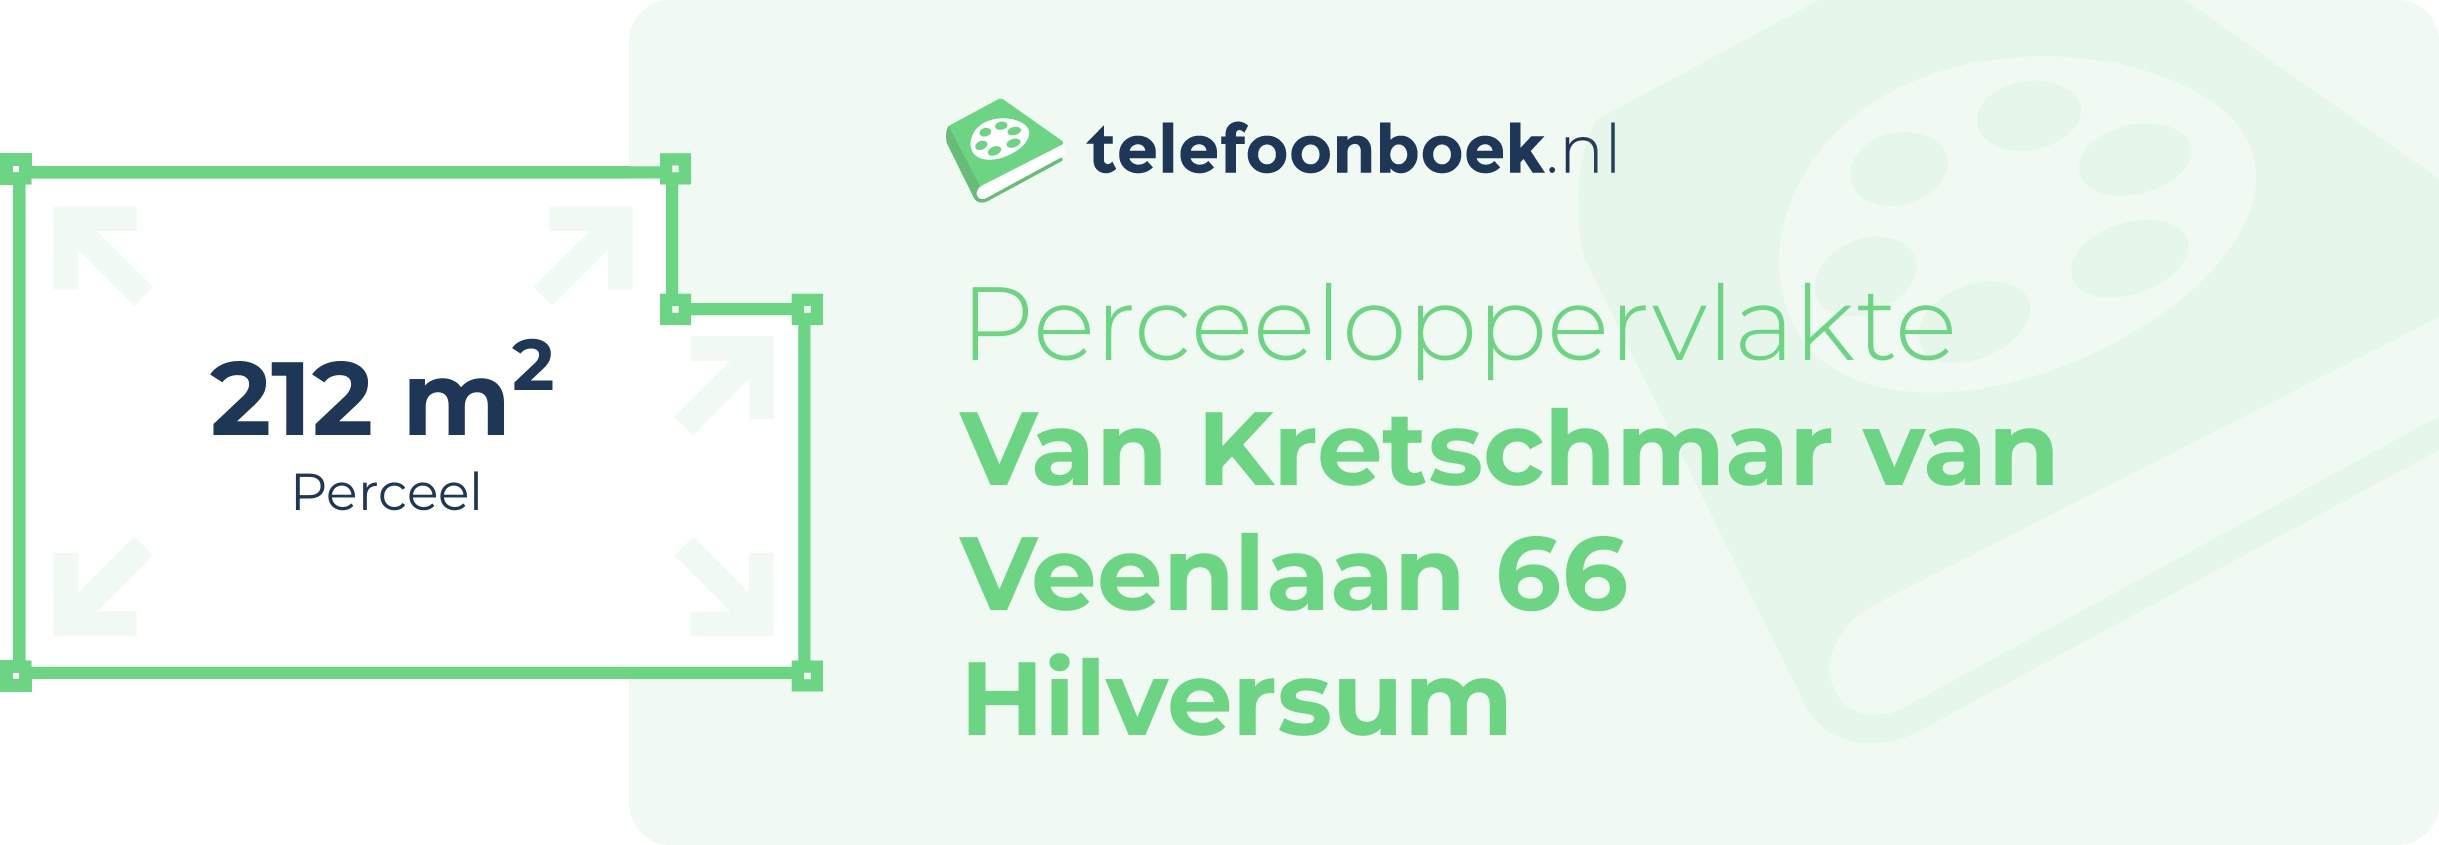 Perceeloppervlakte Van Kretschmar Van Veenlaan 66 Hilversum